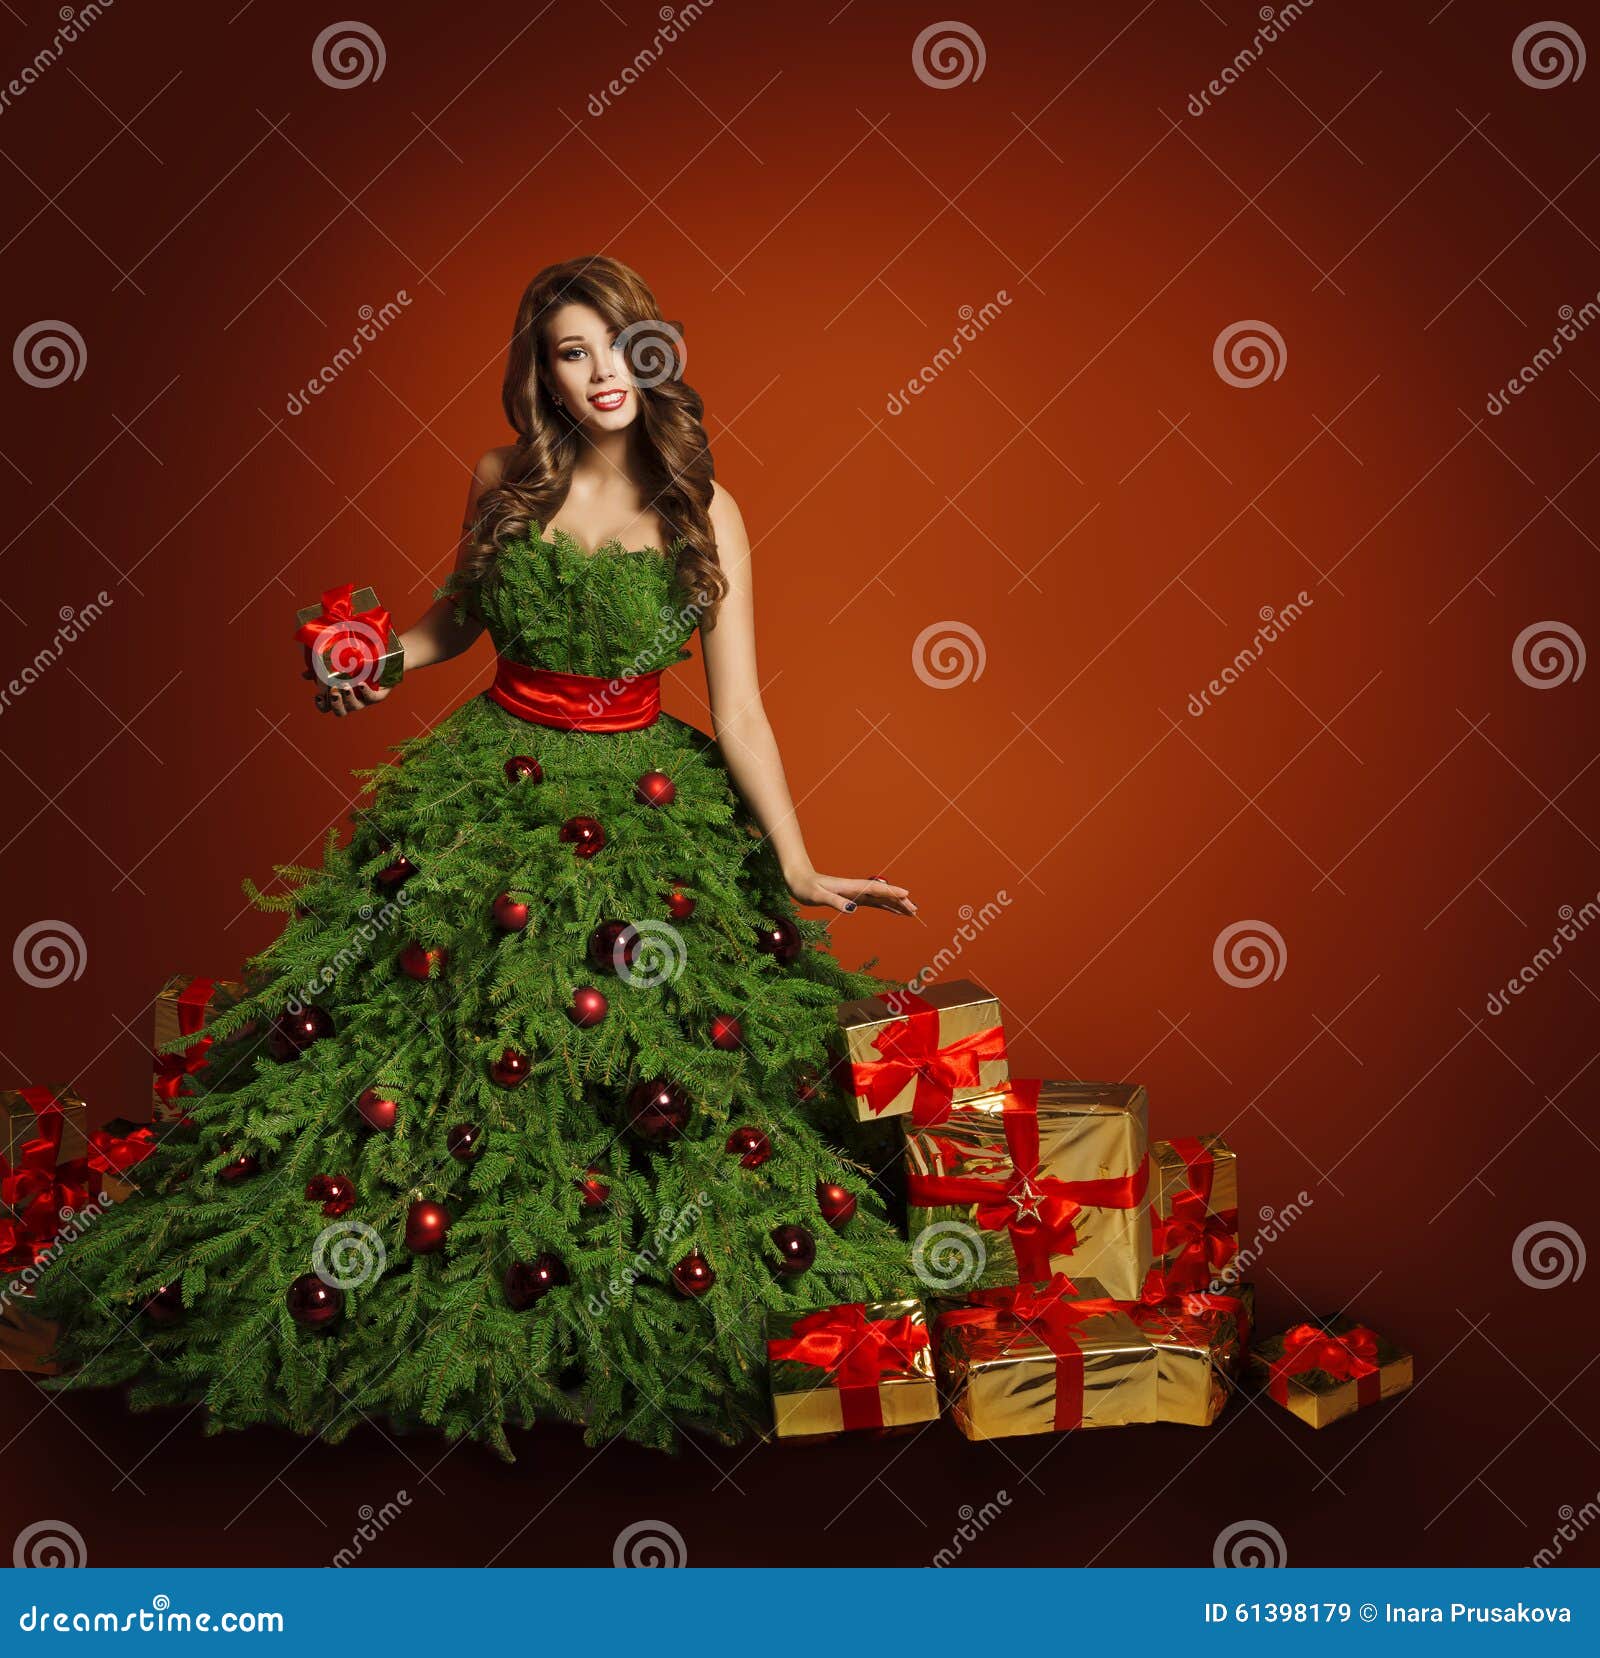 Vestido De La Mujer De La Moda Del árbol De Navidad, Girl Modelo, Presentes  Del Rojo Imagen de archivo - Imagen de femenino, manera: 61398179